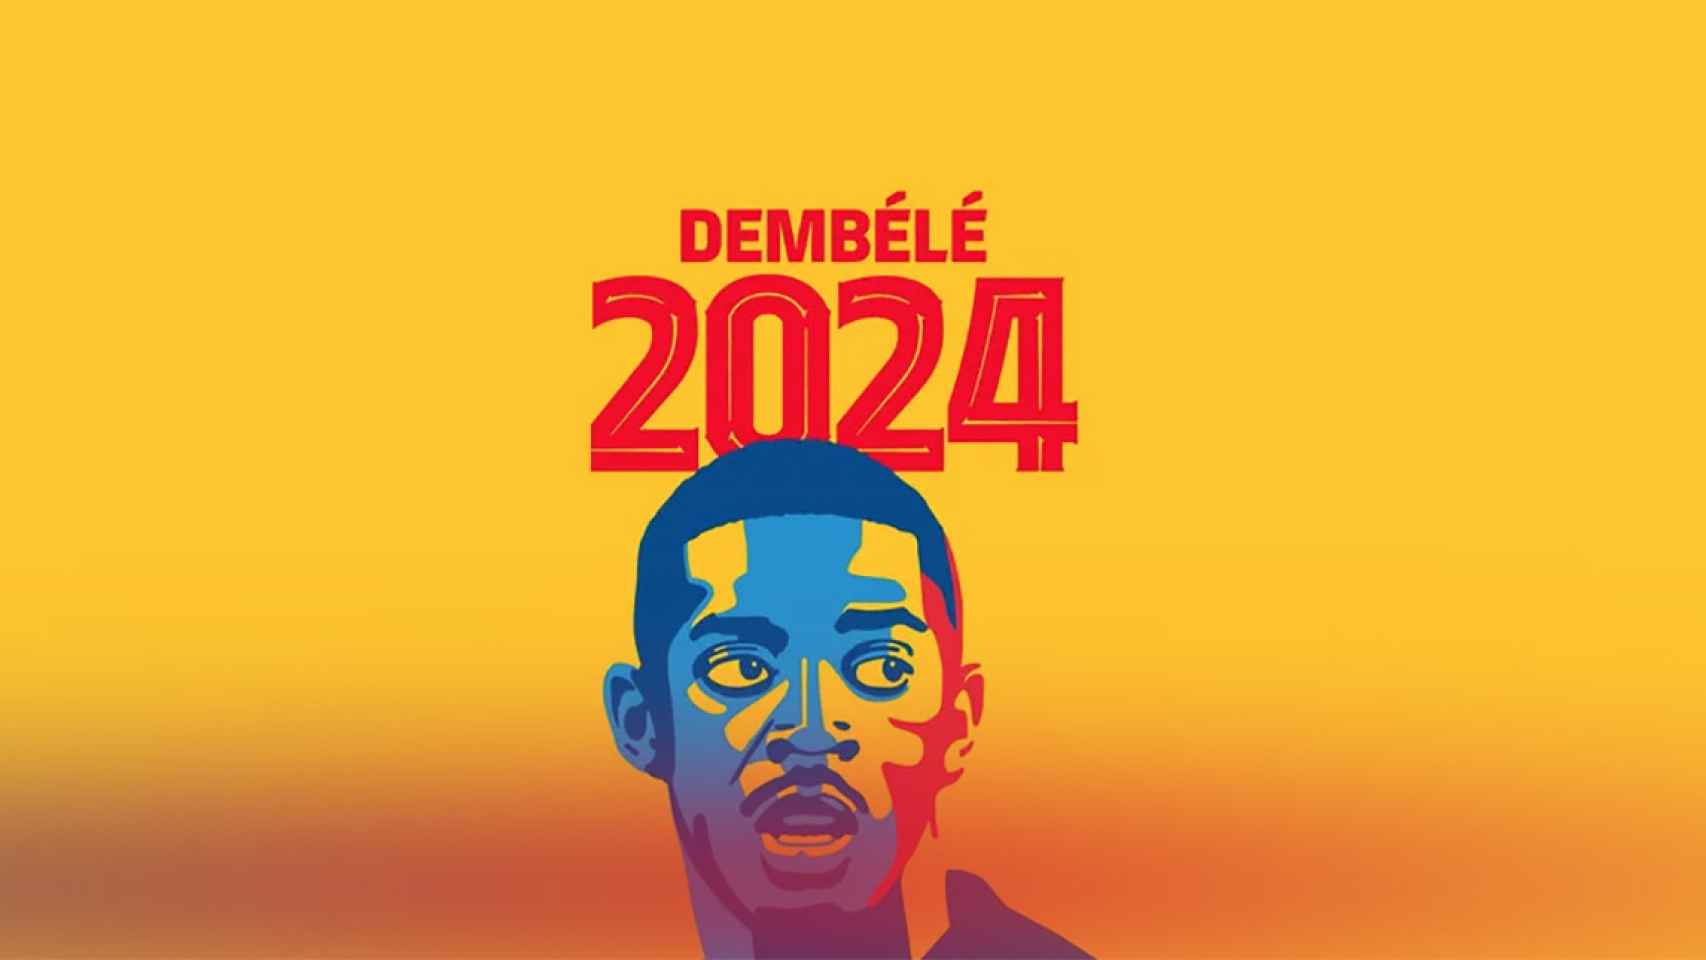 Dembelé renueva con el FC Barcelona hasta 2024 / FCB